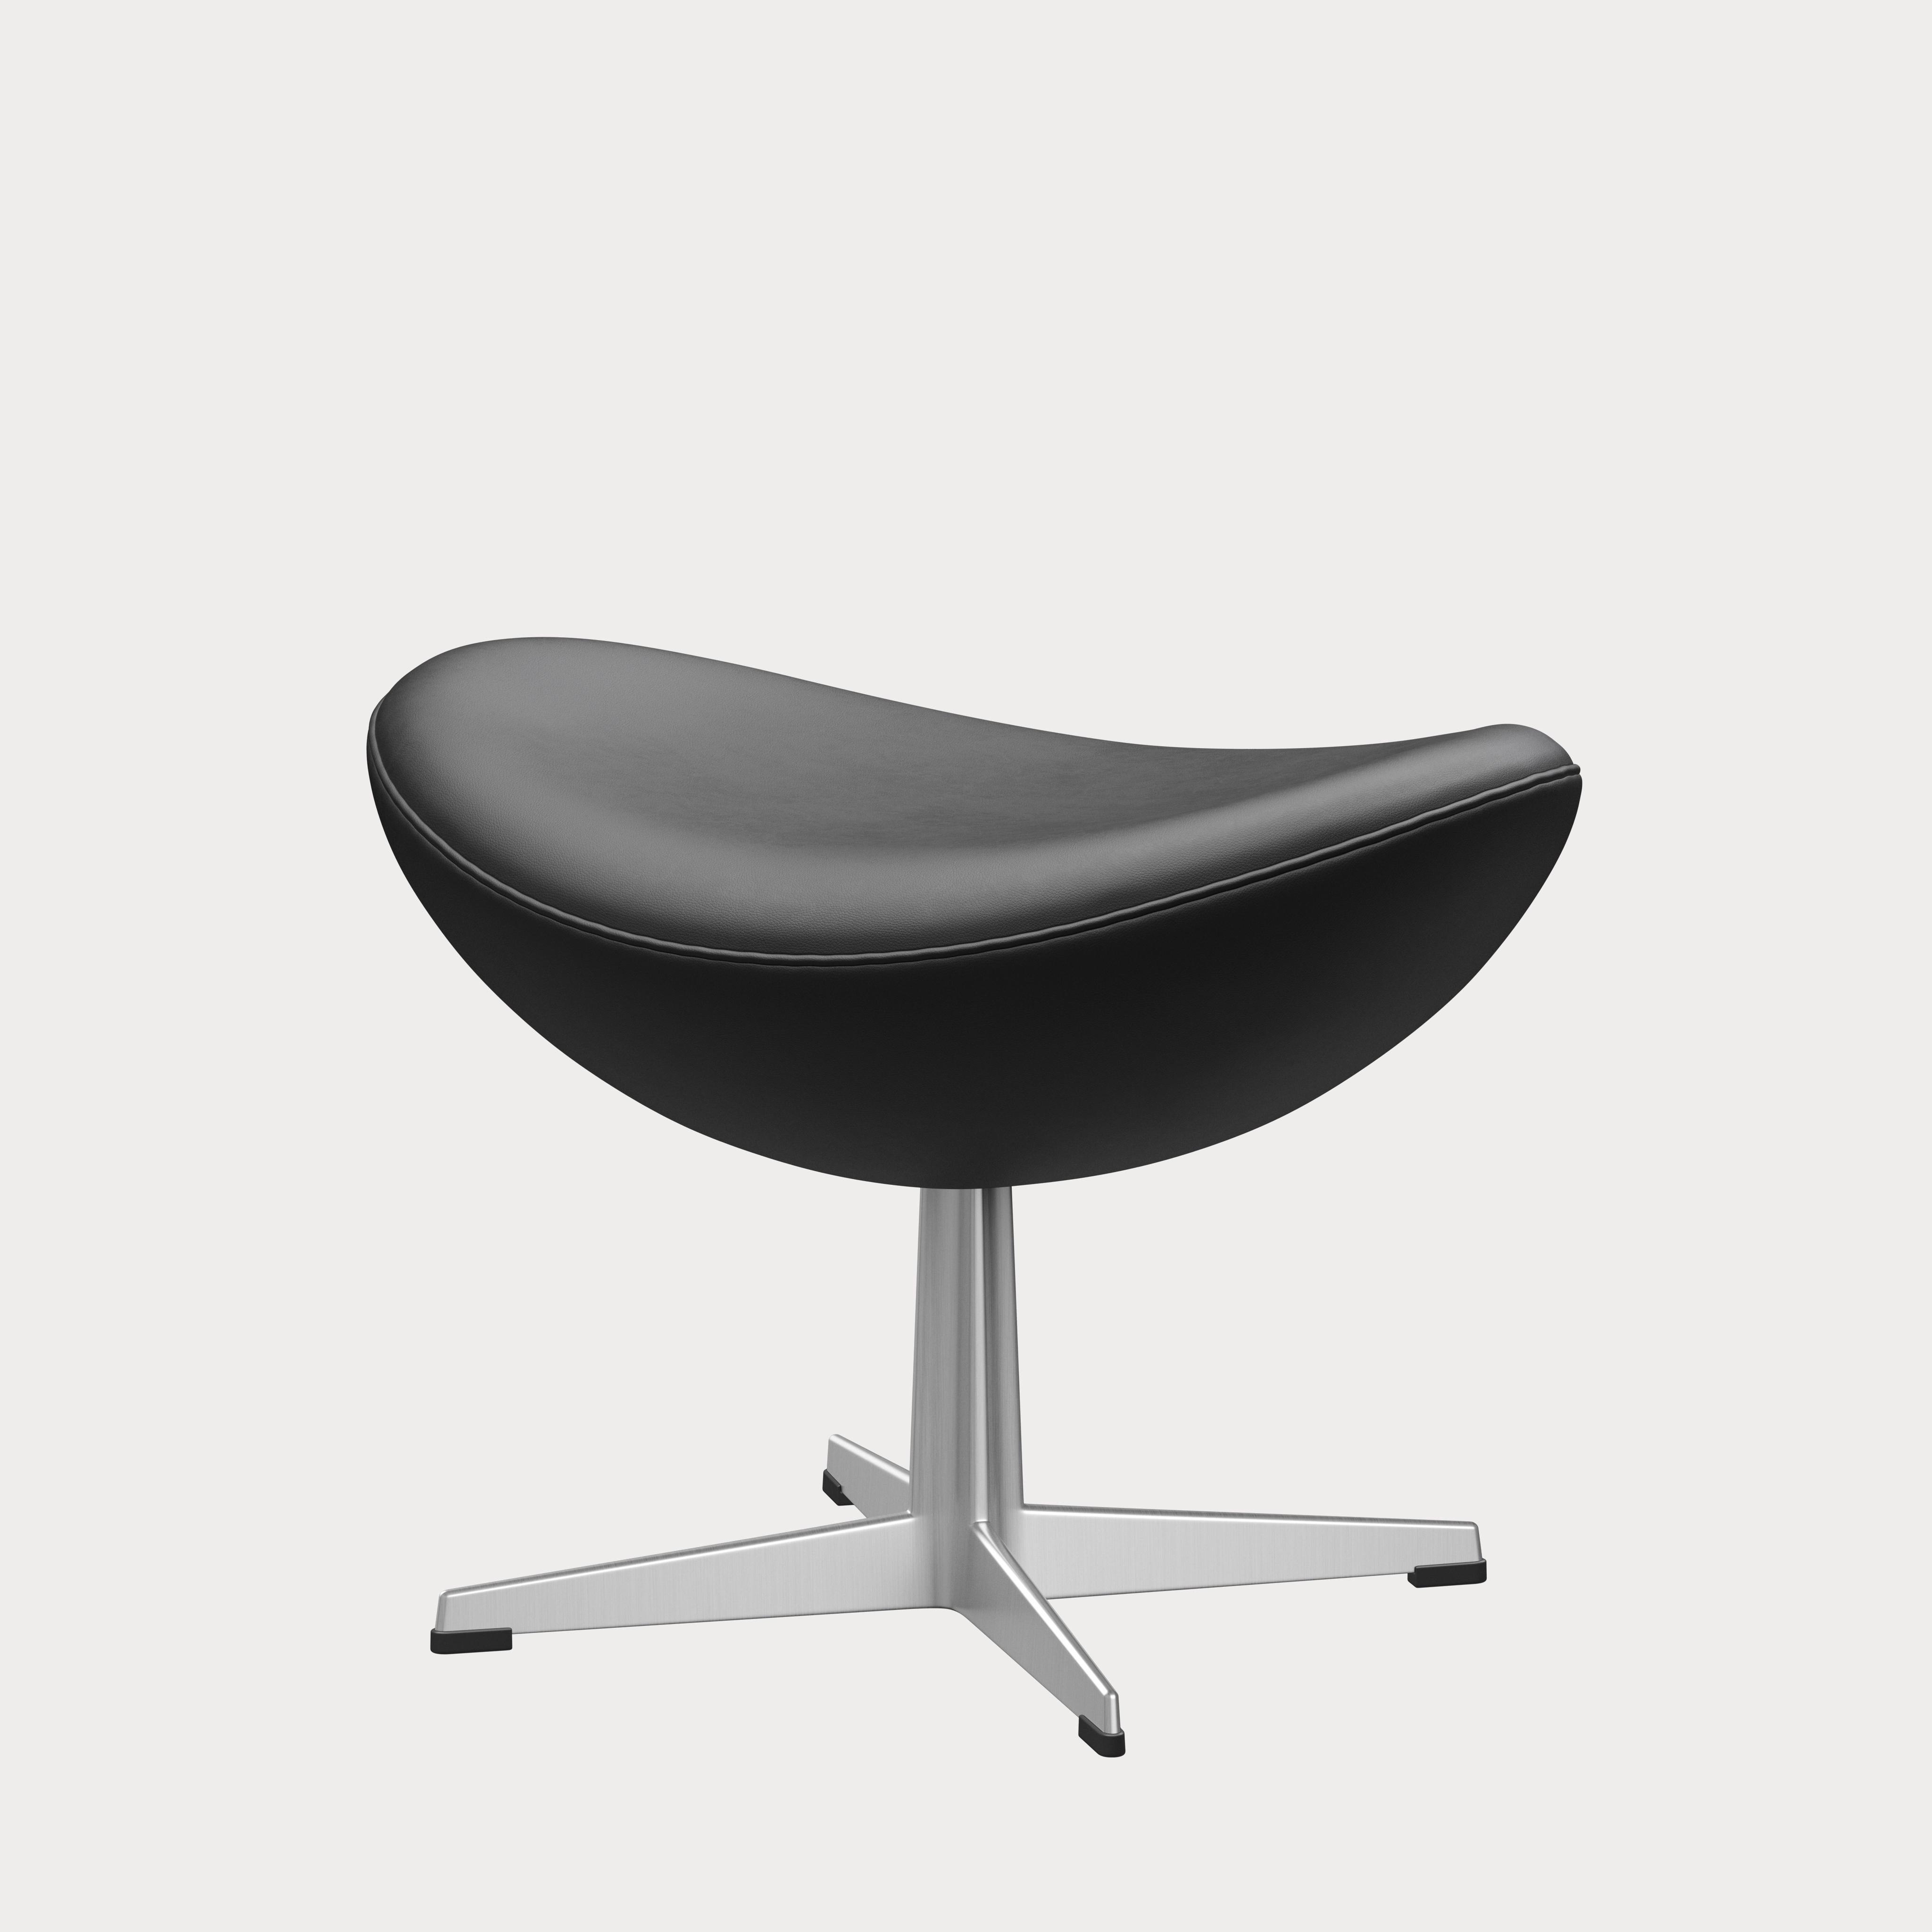 Arne Jacobsen 'Egg' Footstool for Fritz Hansen in Leather Upholstery (Cat. 3) For Sale 2